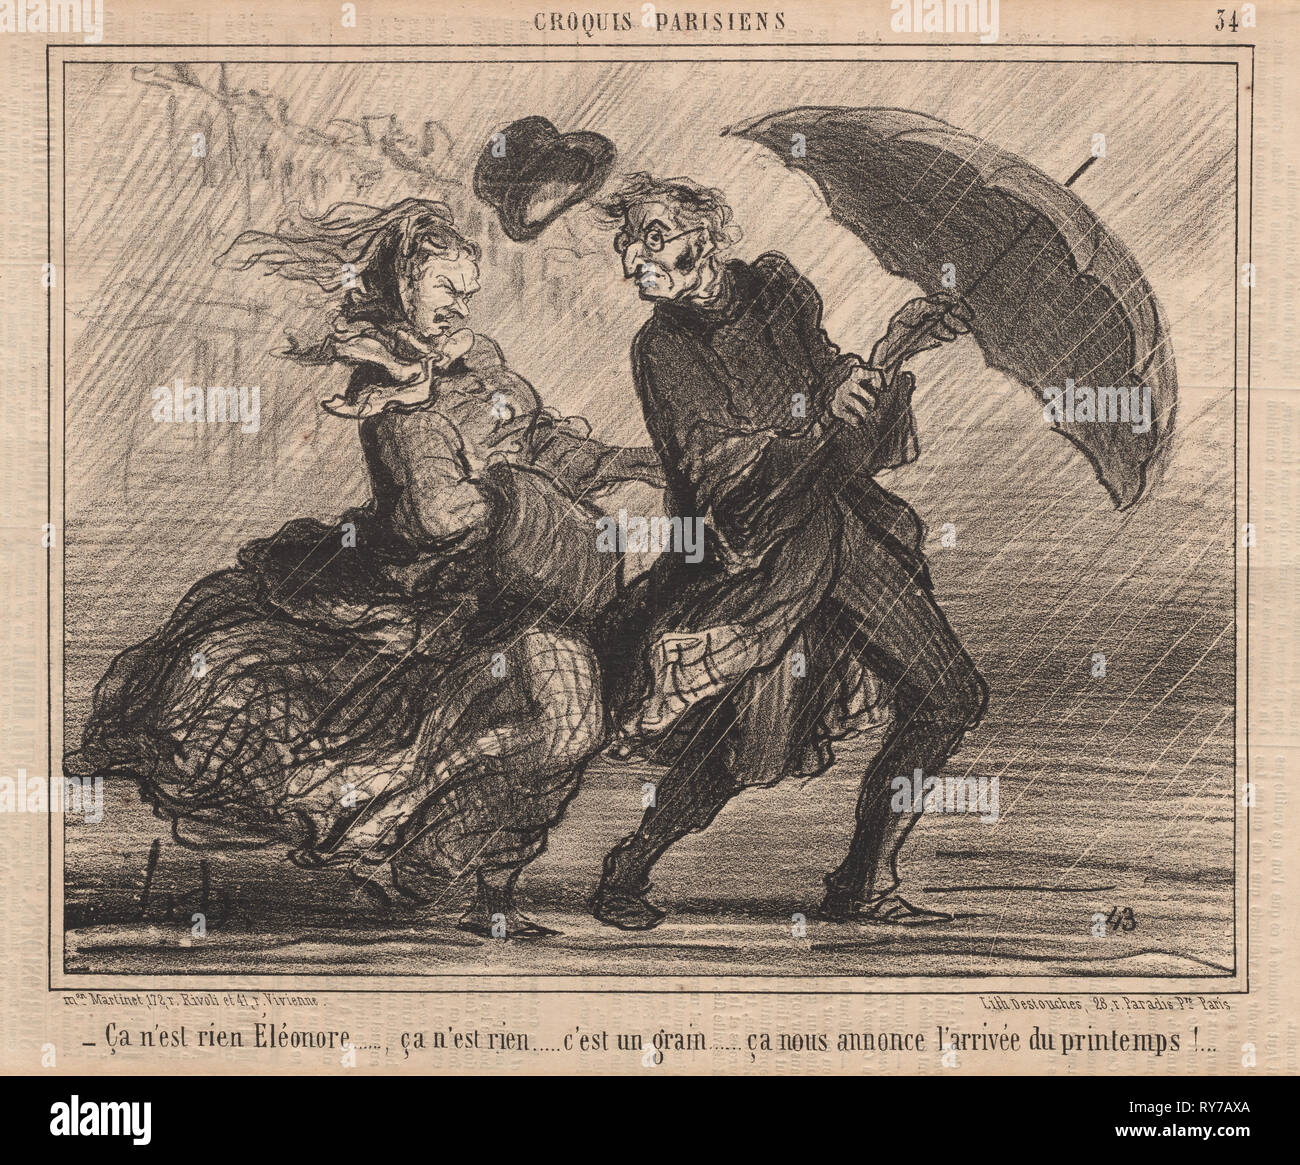 Publiée dans Le Charivari, le 6 avril 1857 : Croquis Parisiens : Pl. 34, c'est rien d'Eleanor (soirées Parisiens : Pl. 34, ça n'est rien Éléanor). Honoré Daumier (Français, 1808-1879), du lundi au Martinet, r. Rivoli, et 41 r. Vivienne. Fiche technique : Lithographie ; 24,6 x 33,5 cm (9 11/16 x 13 3/16 po.) ; image : 20,4 x 26 cm (8 1/16 x 10 1/4 po Banque D'Images